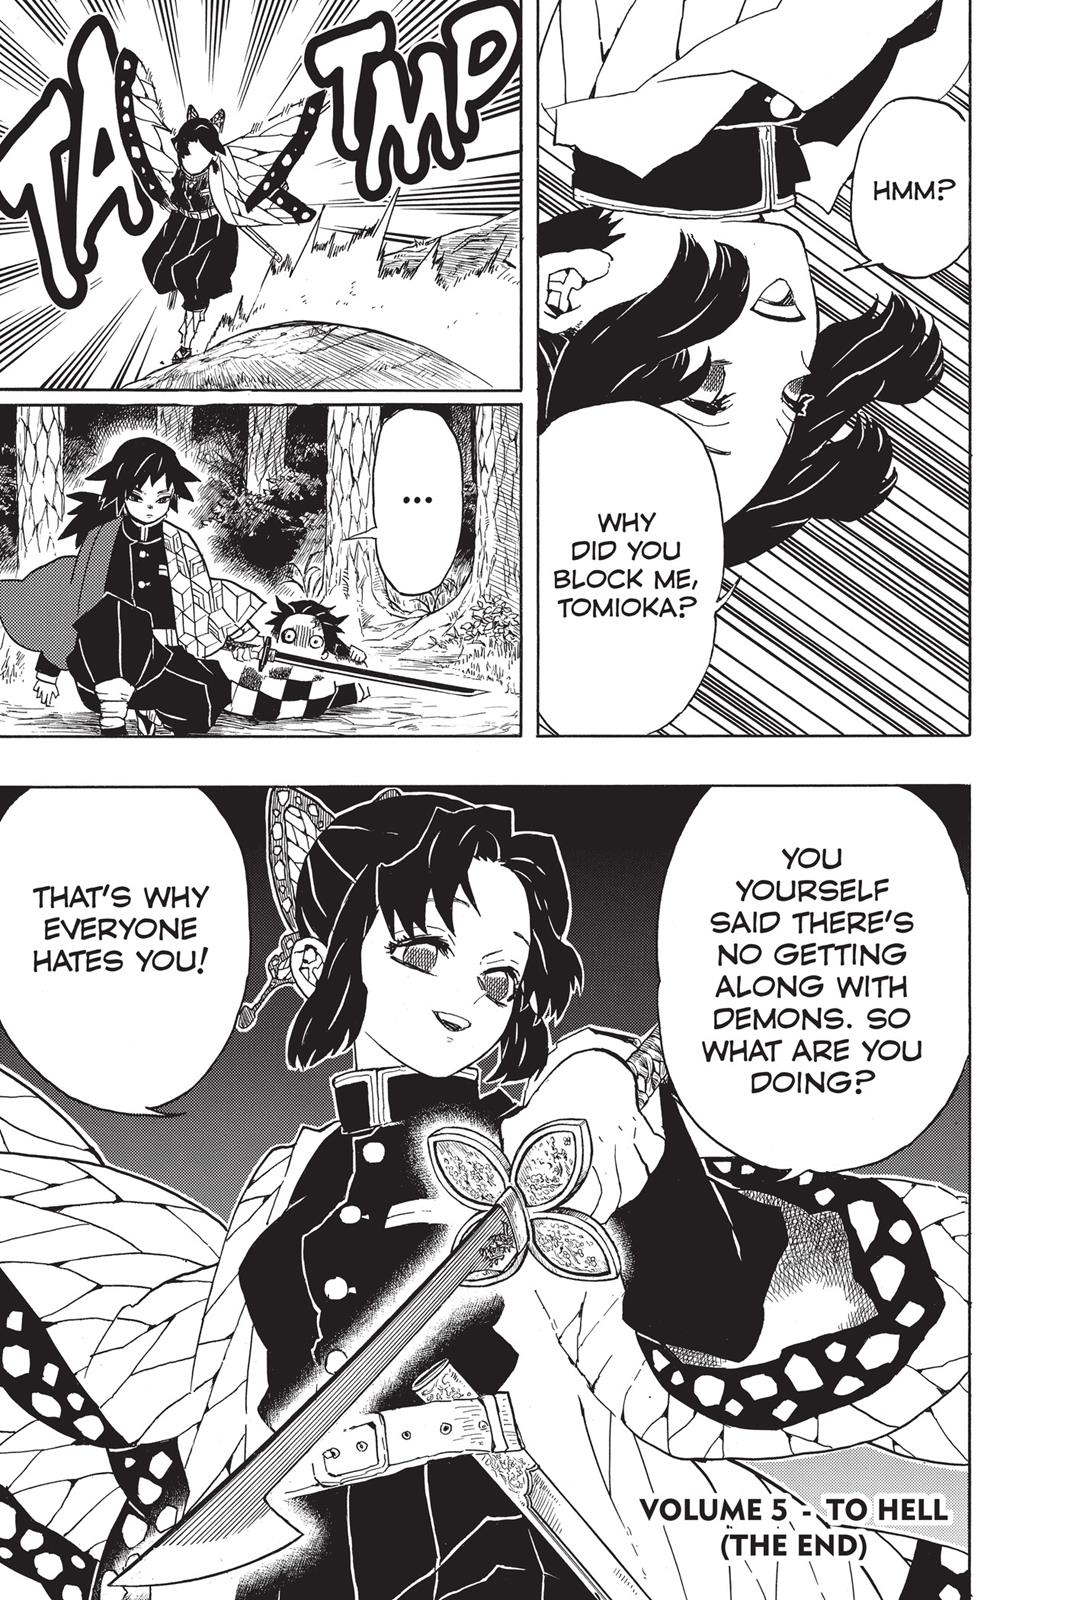 Demon Slayer Manga Manga Chapter - 43 - image 19